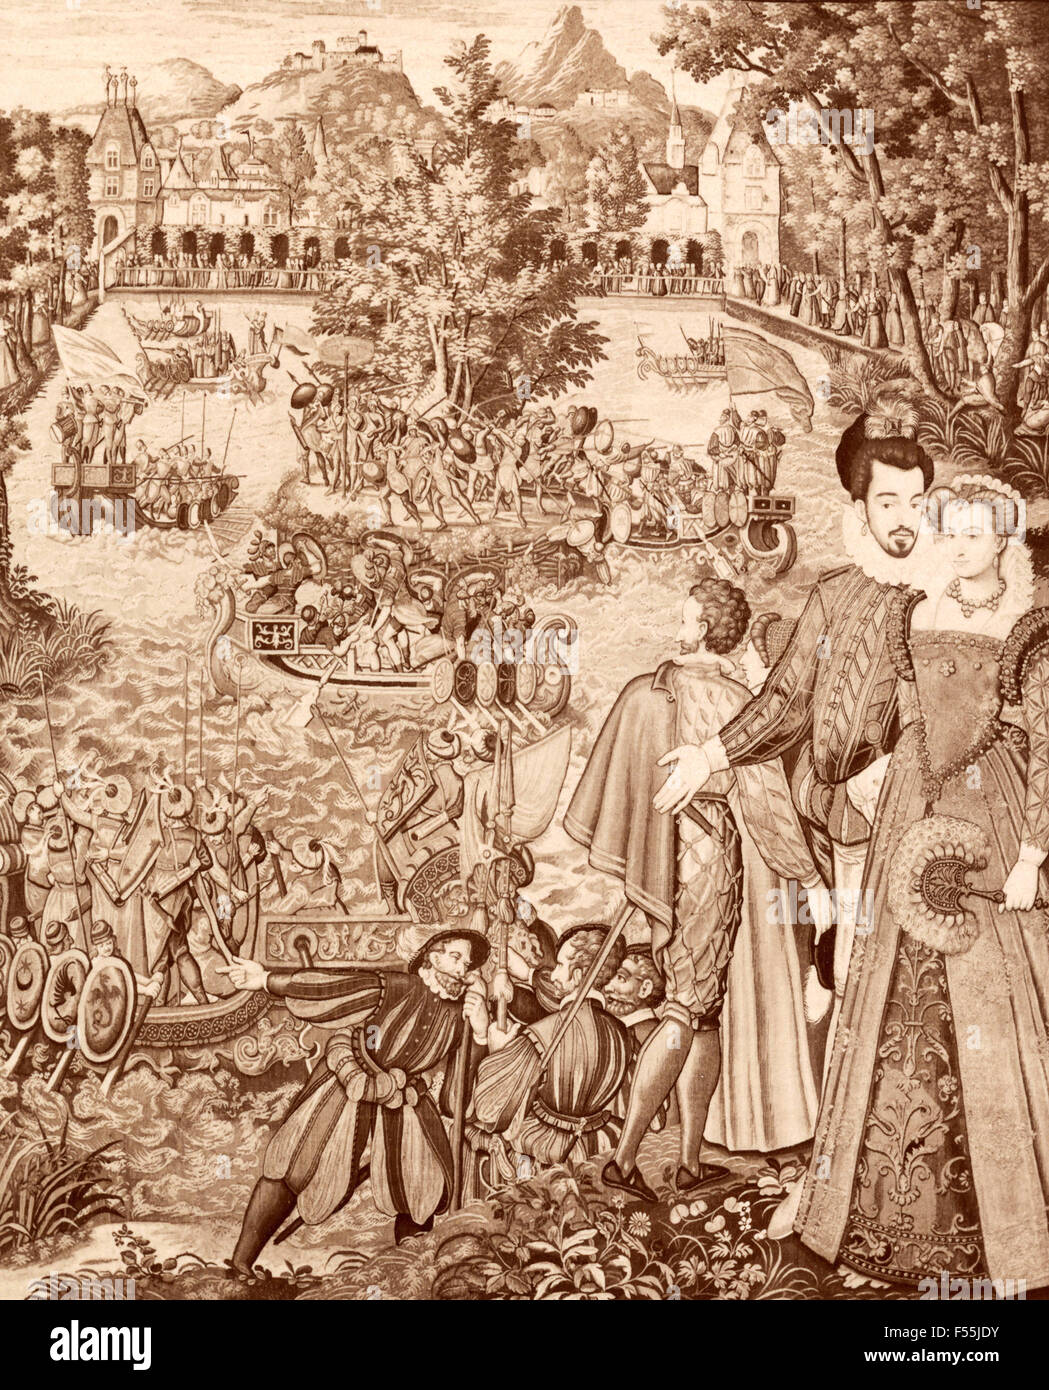 Galería de tapices, Florencia: Festival de Enrique II y Catalina de Médicis, tapices flamencos Foto de stock